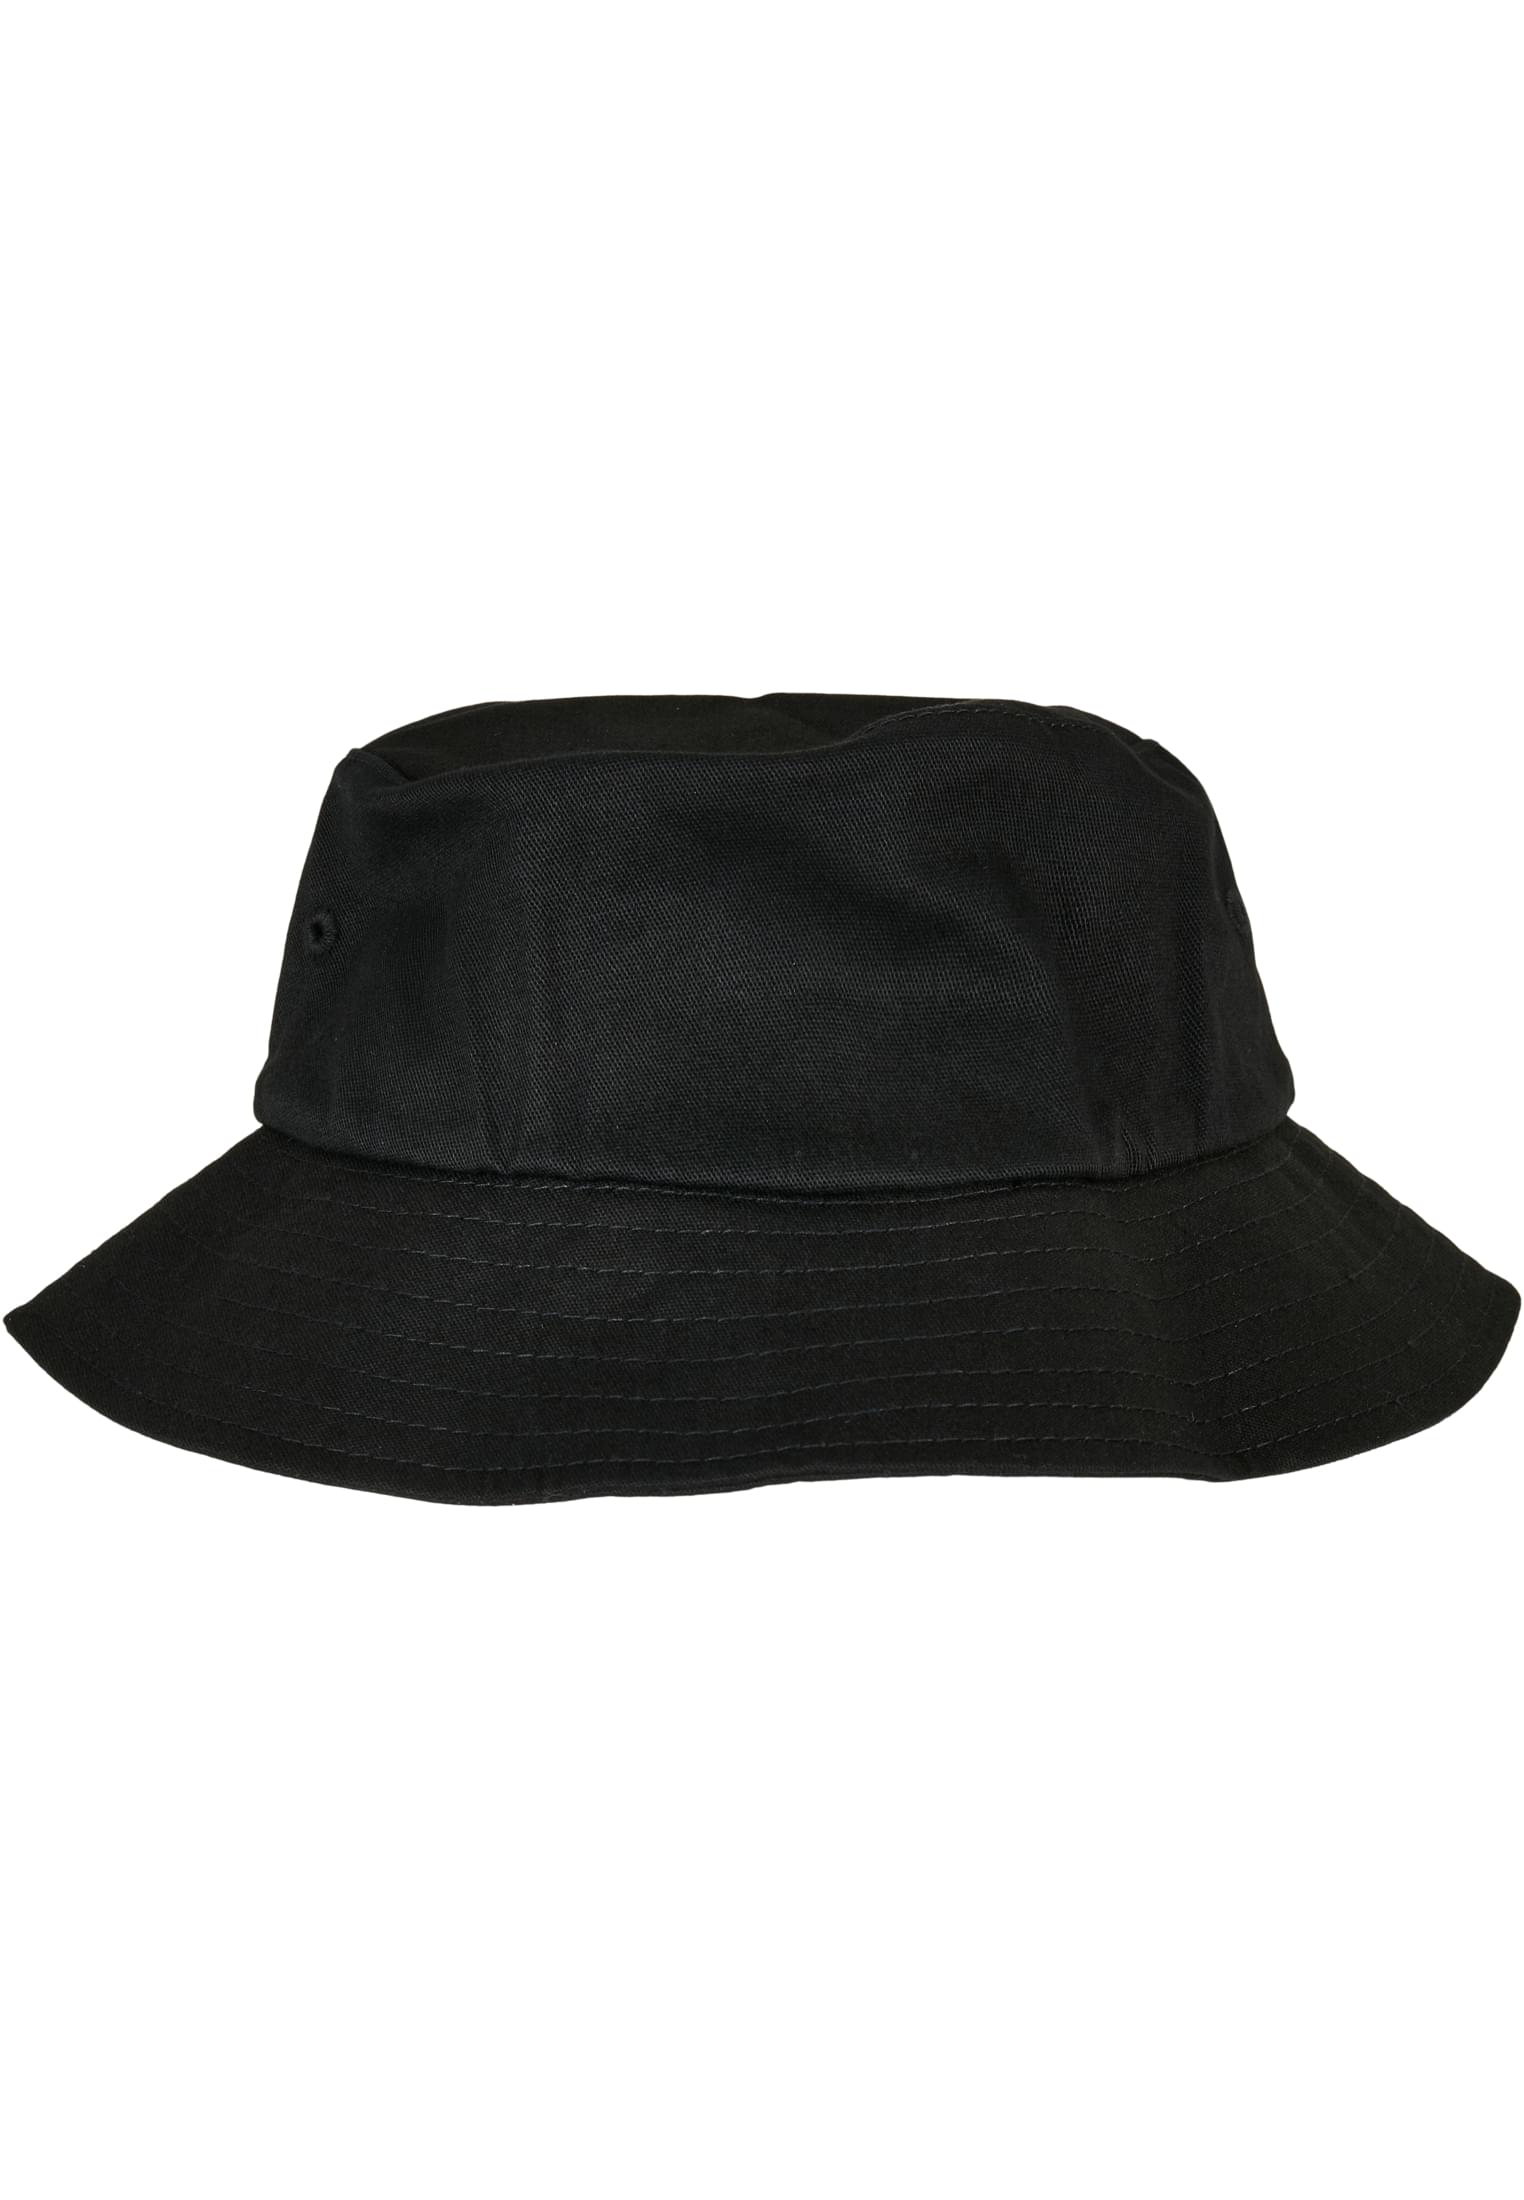 Flexfit Bucket Hat Cotton Twill Kids-5003KH